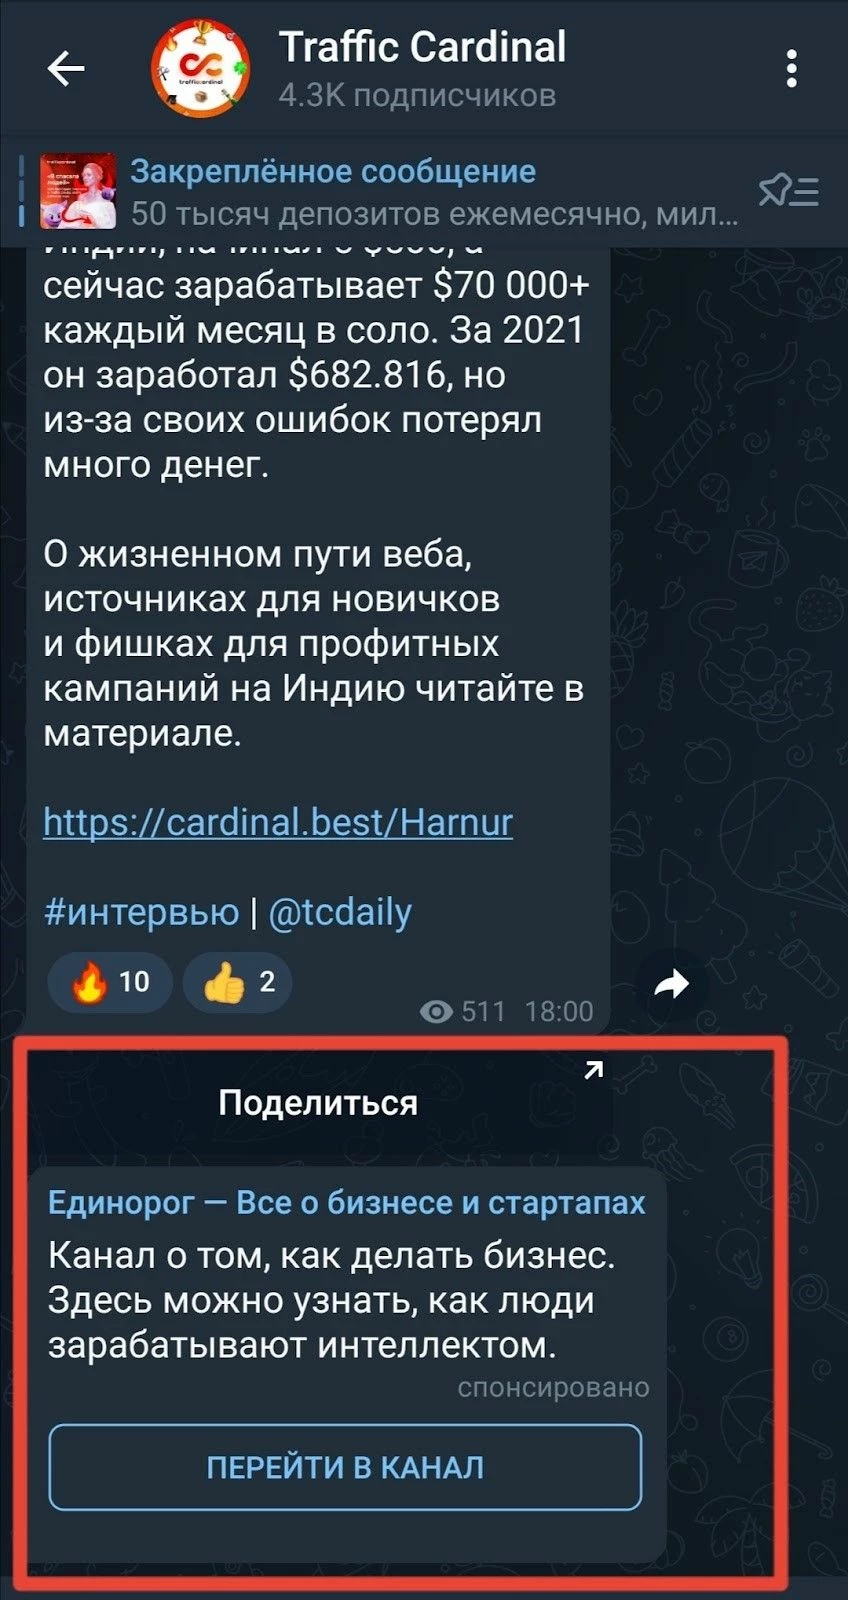 Спонсируемое сообщение в Telegram